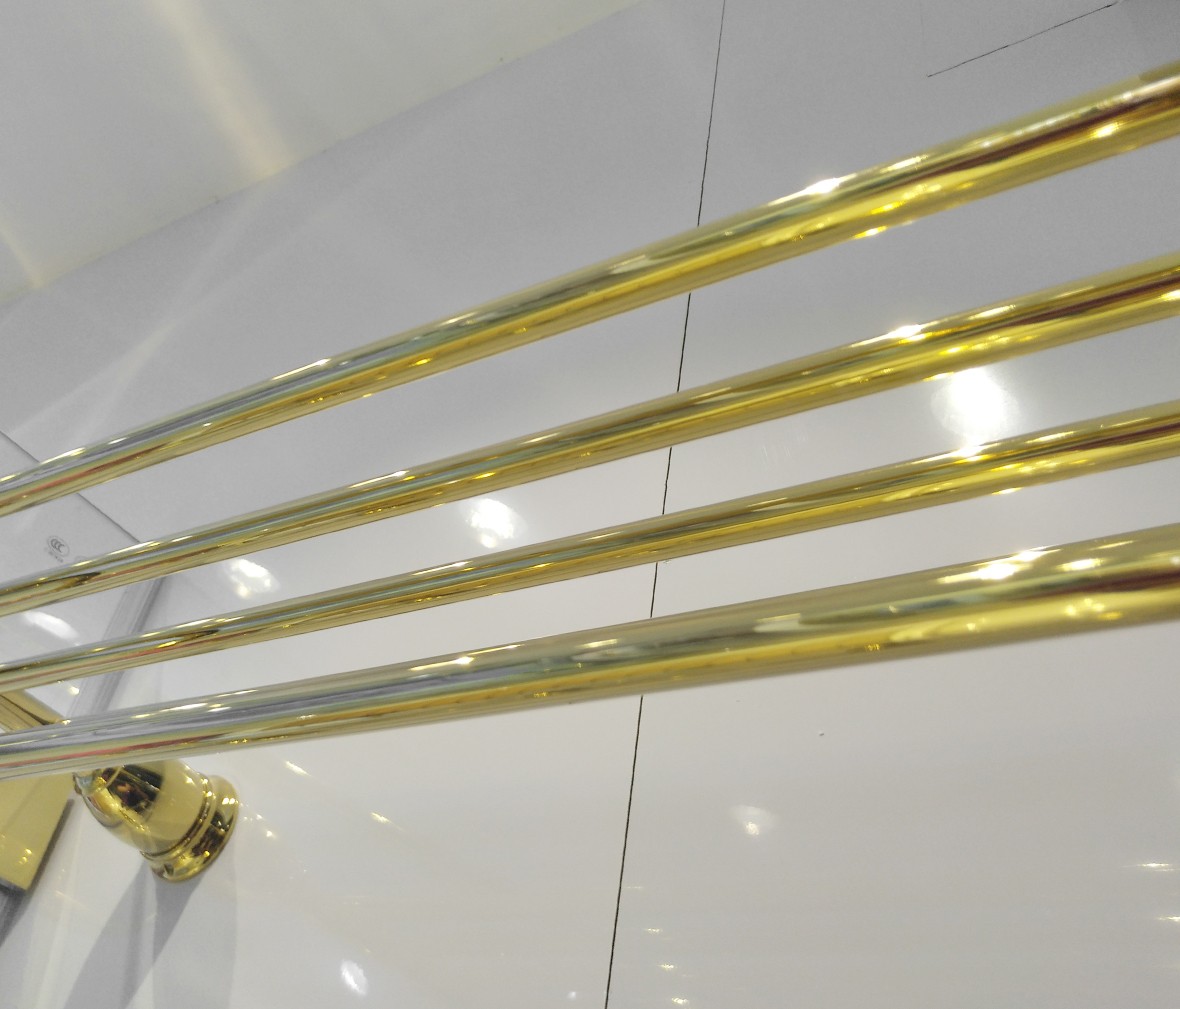 朗斯卫浴 LG-36F型号浴室五件套 全铜材质镀铬五金挂件 商品细节